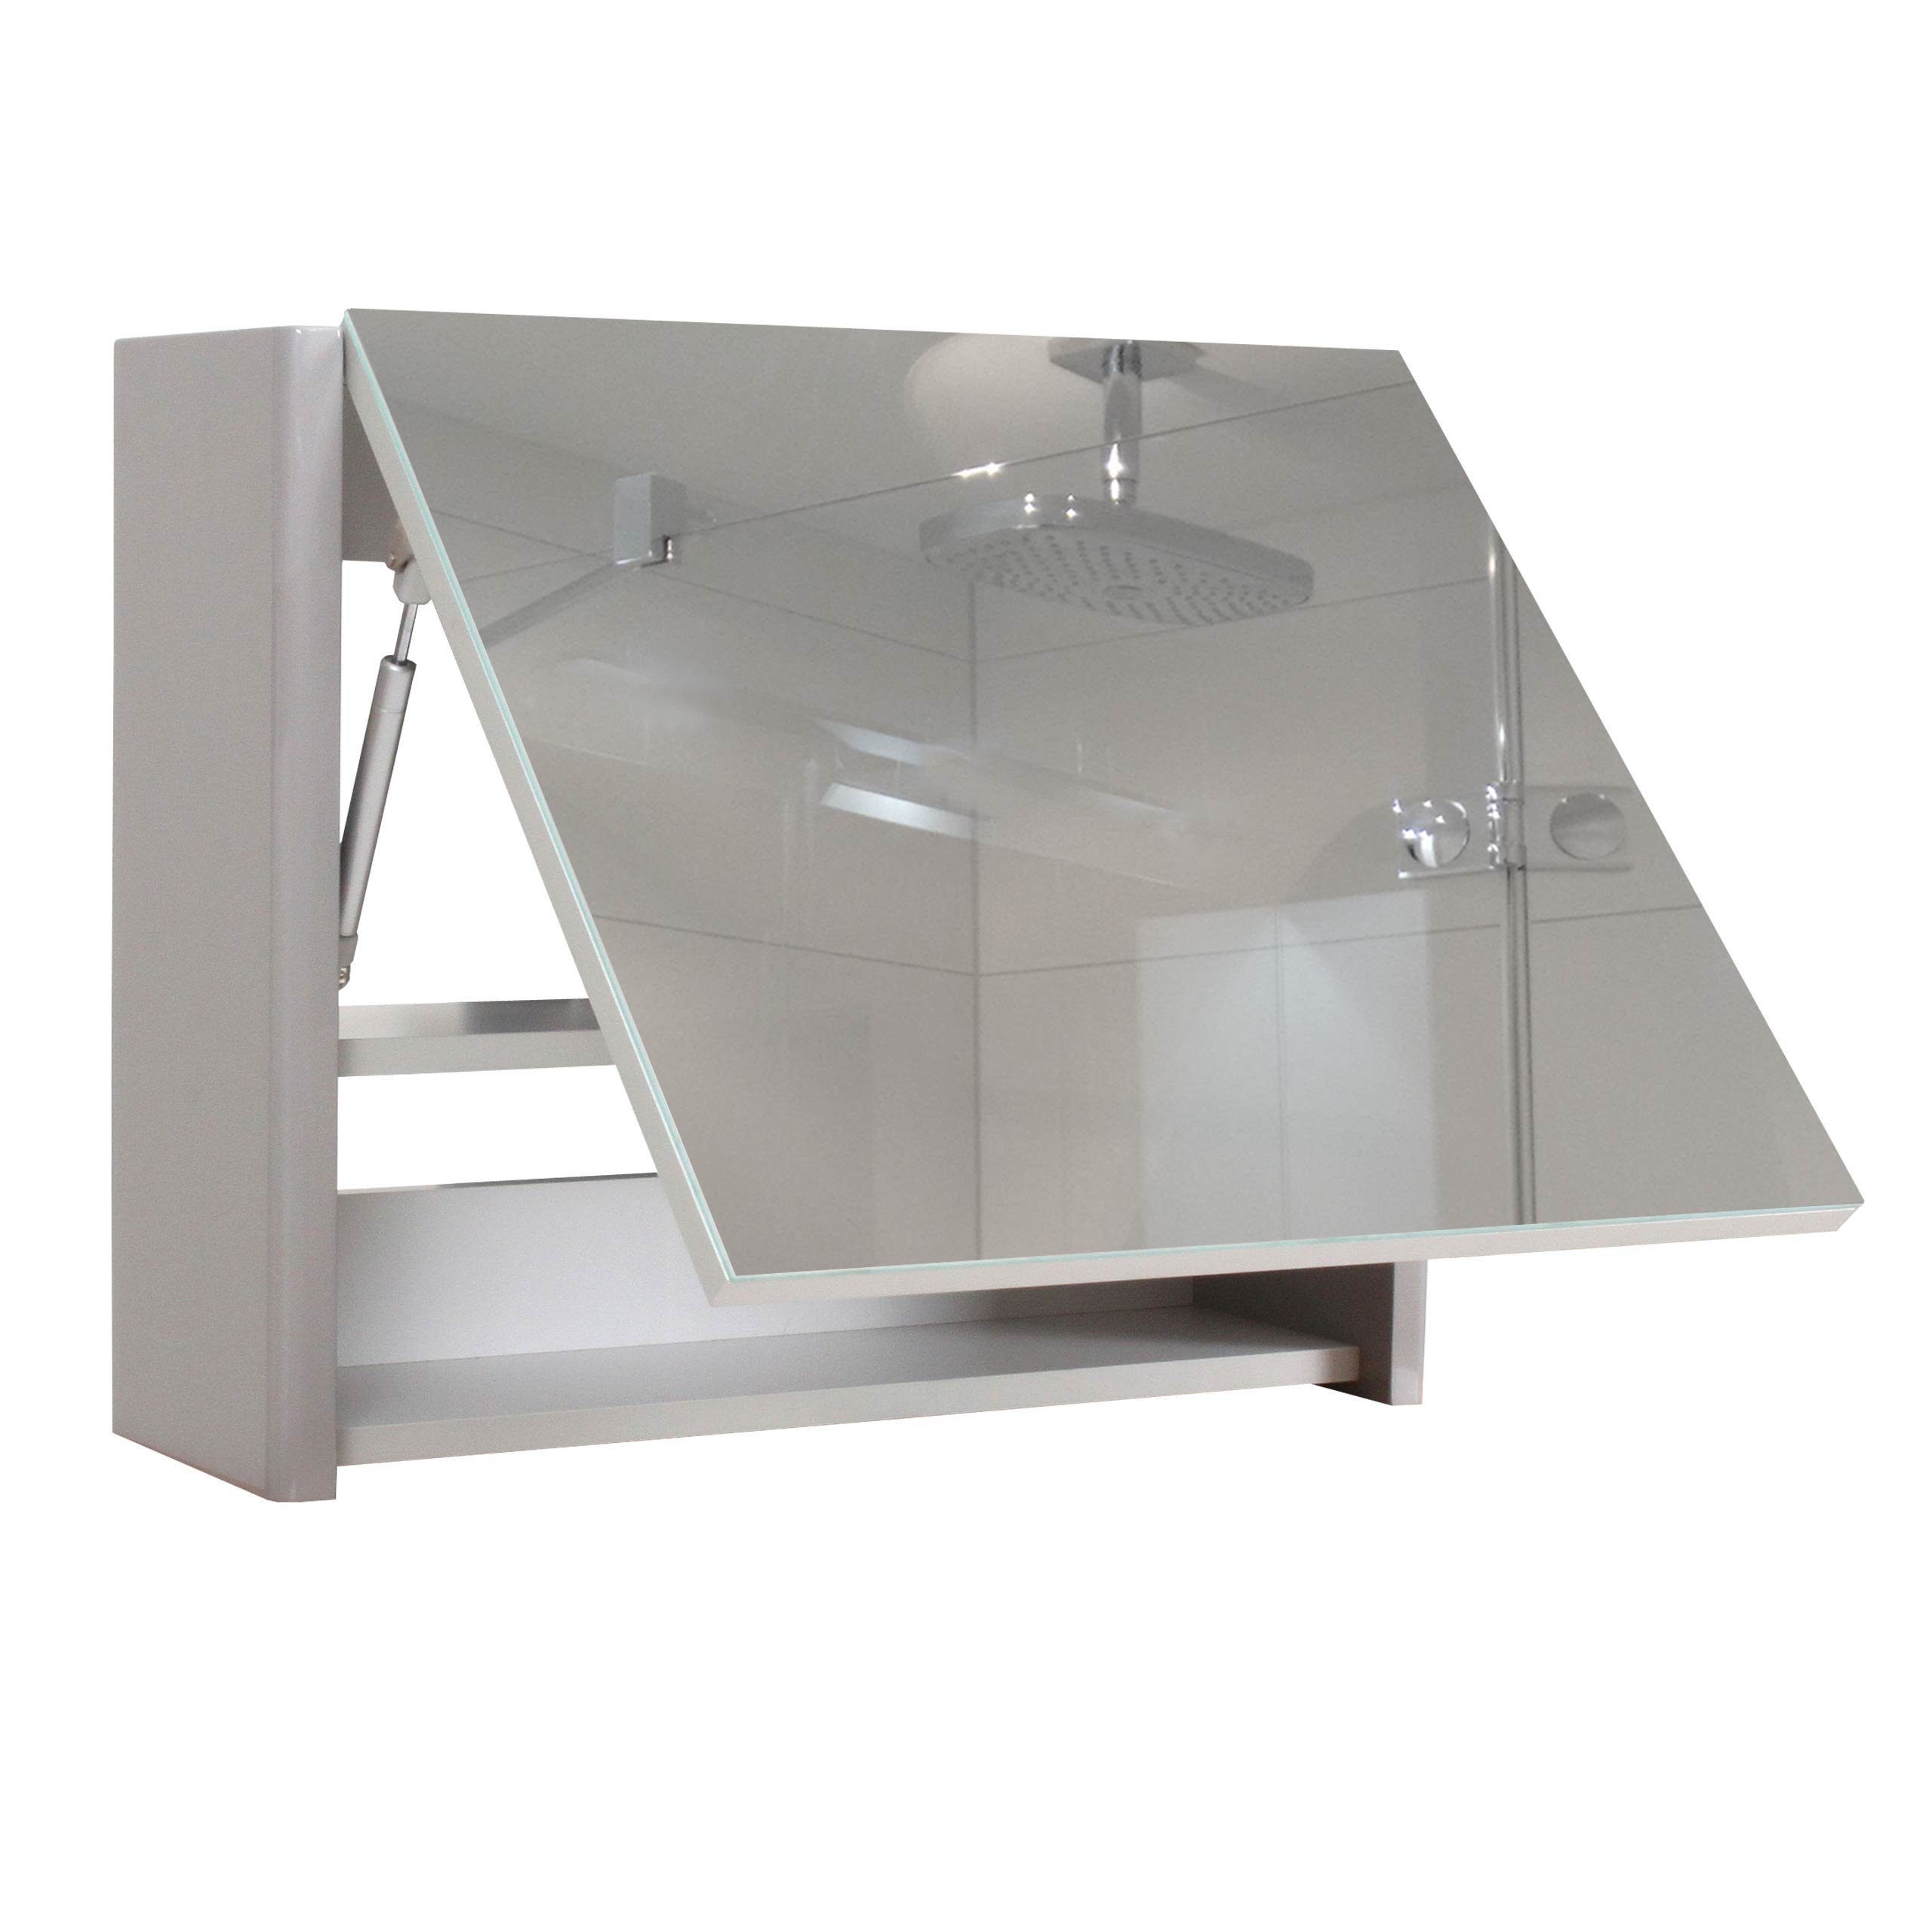 MCW Badezimmerspiegelschrank MCW-B19-C mit Ablagefläche, Hochglanz-Optik, Inkl. Einlegeboden grau | grau